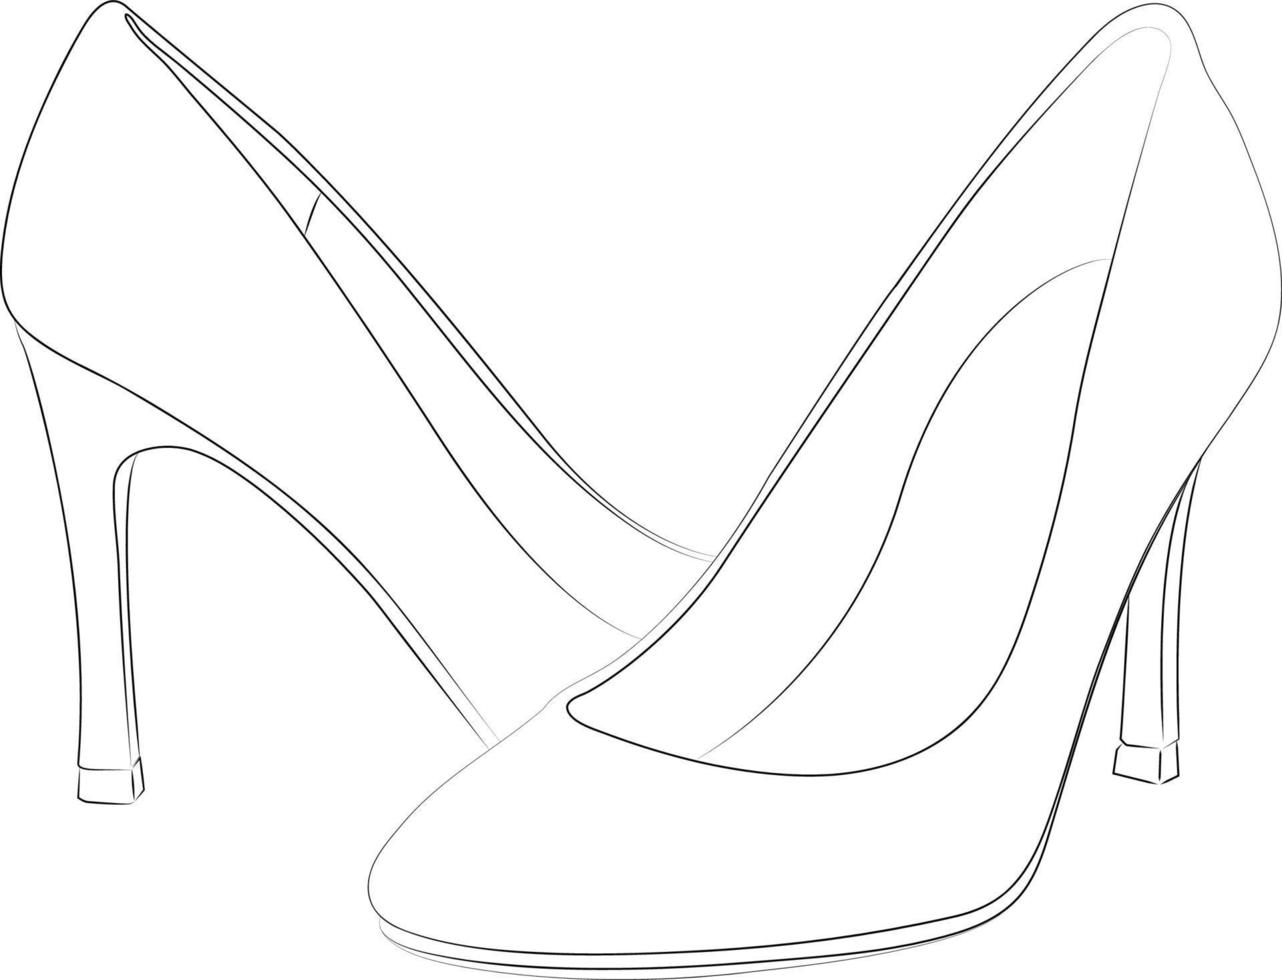 scarpe con tacco alto contorno stype elemento di design vettoriale, illustrazione vettore